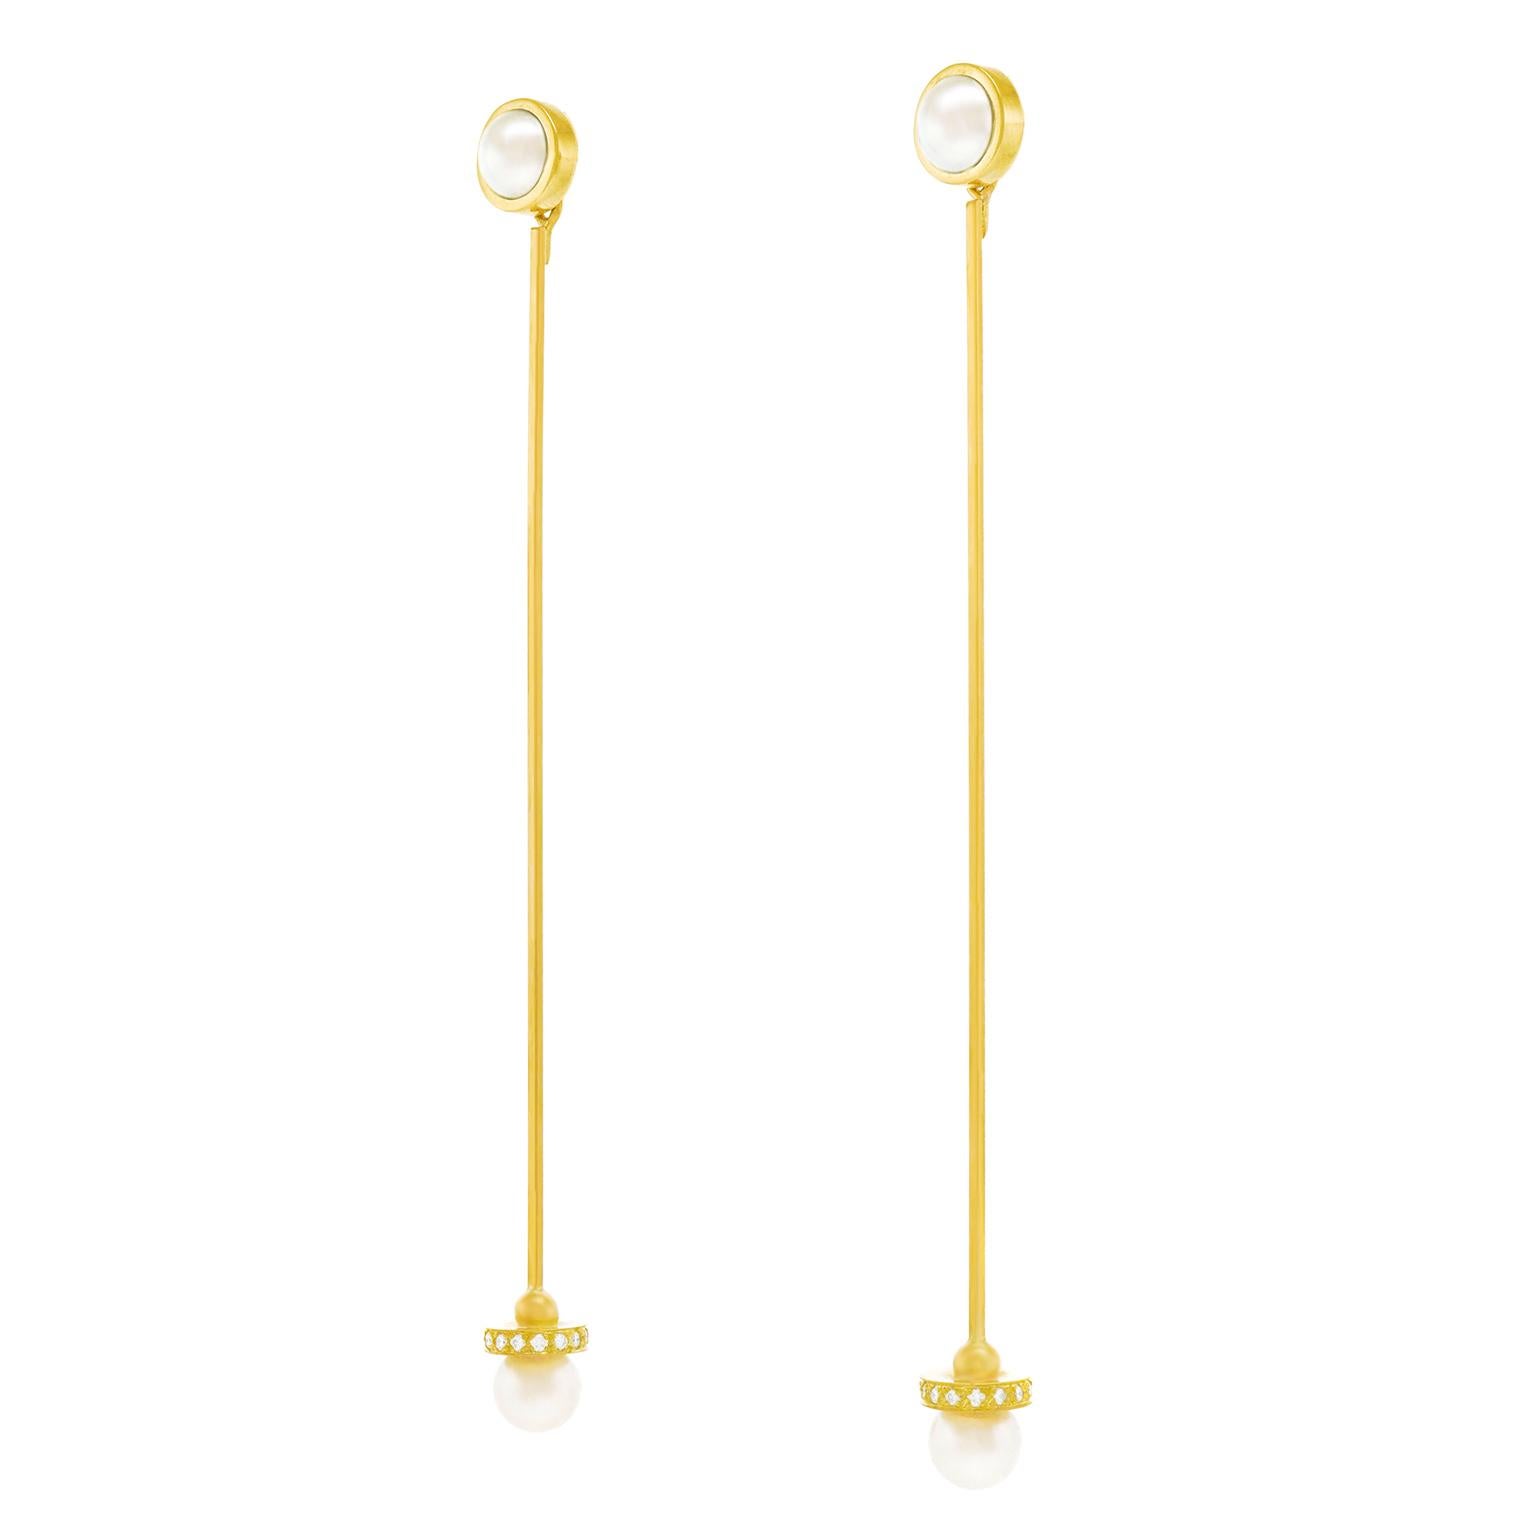 Brilliant Cut Lawrence Jeffrey Hyper Modernist Gold Earrings